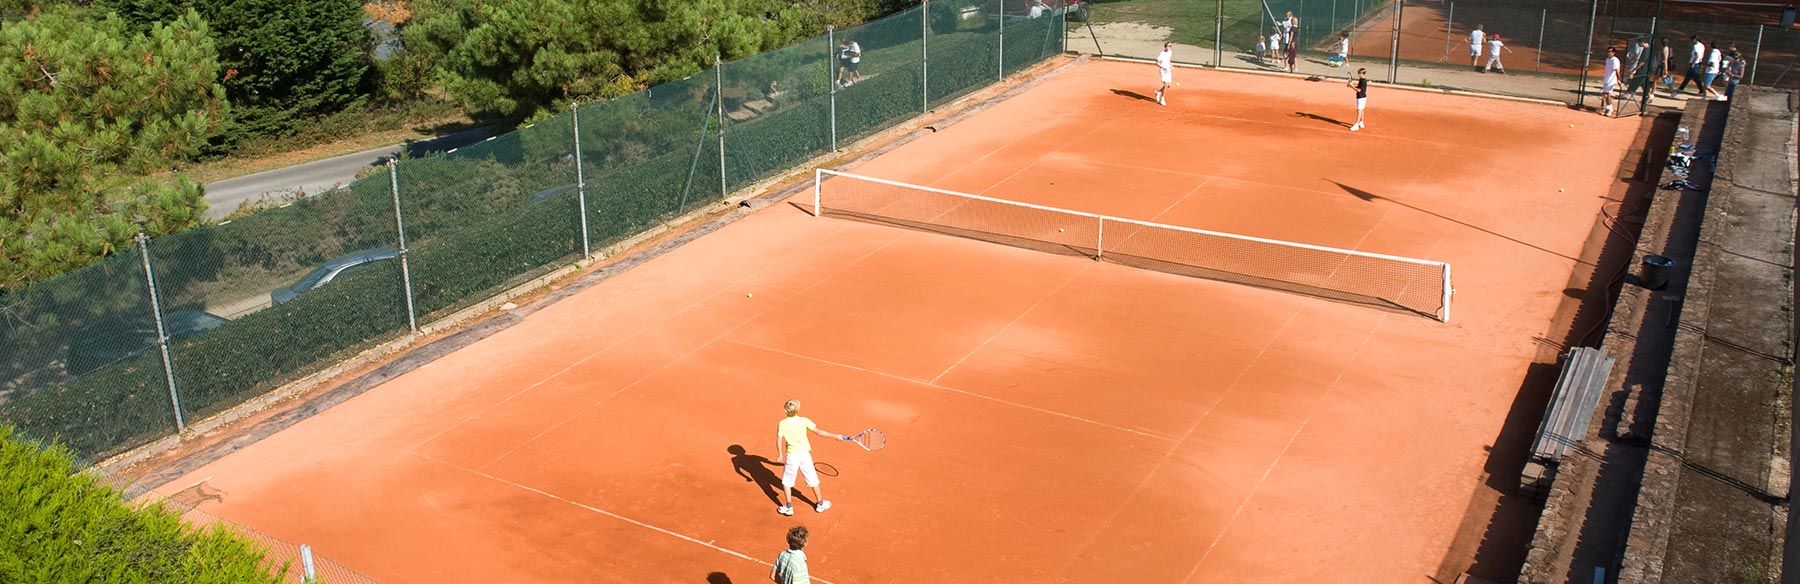 Match de tennis en double sur terre battue.